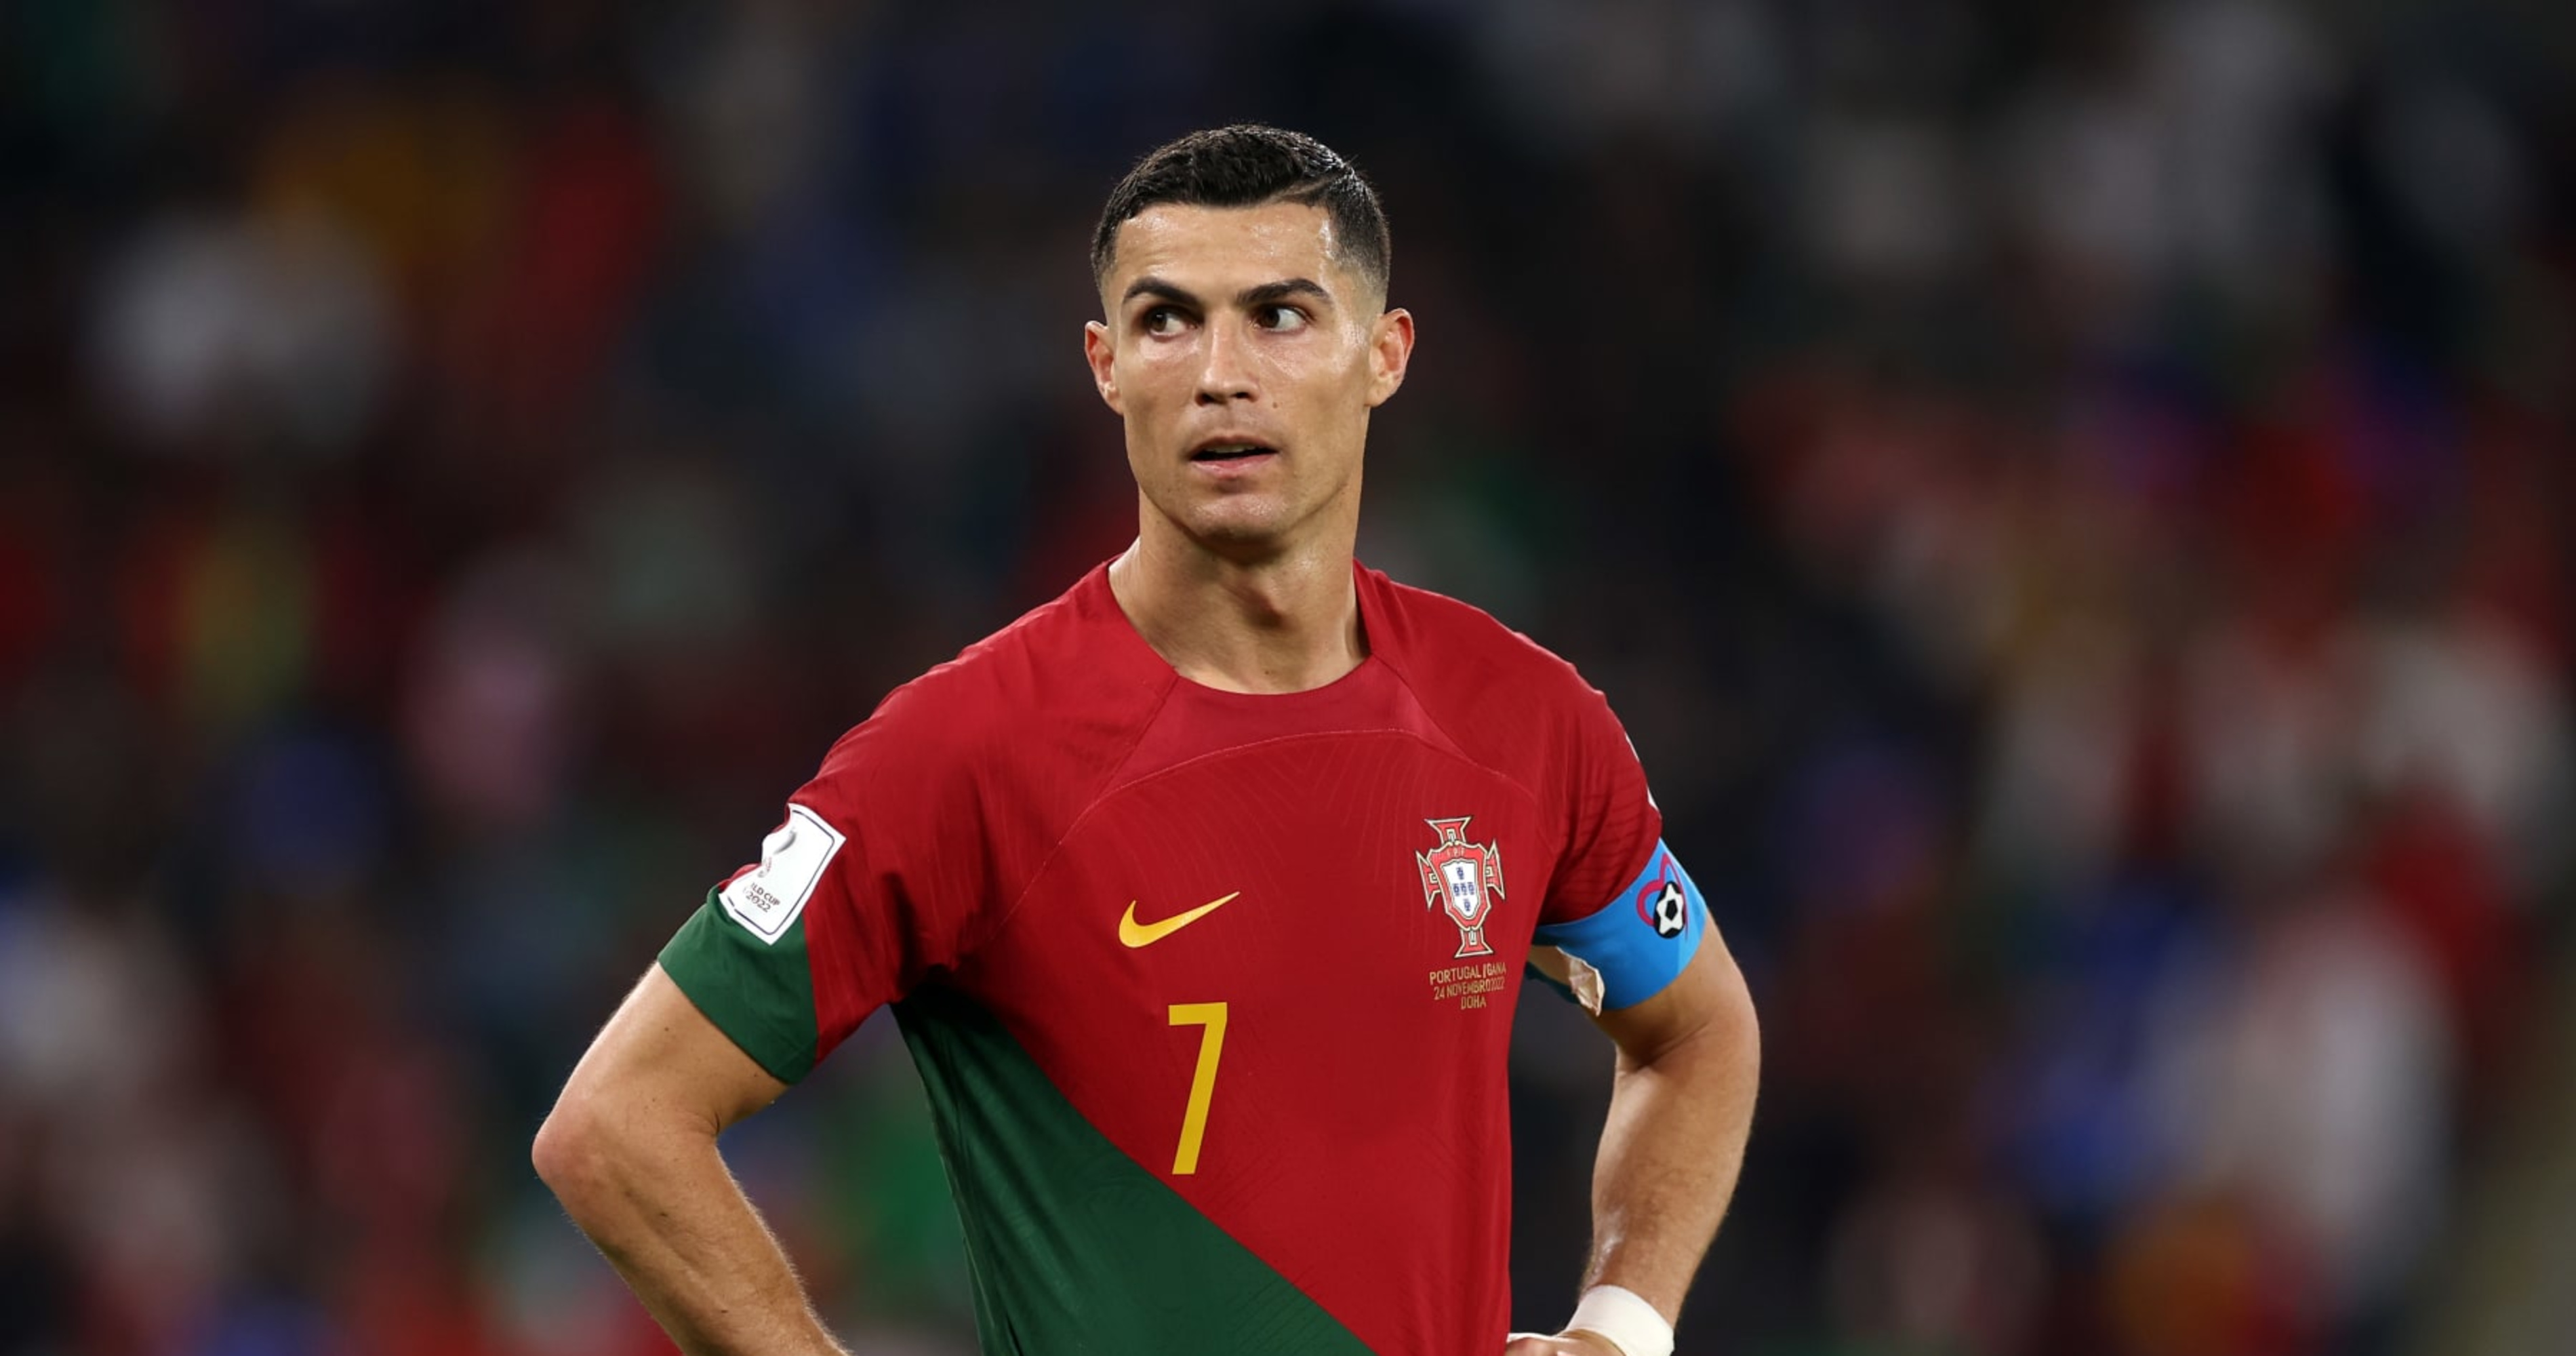 How to Draw Cristiano Ronaldo PORTUGAL Shirt 7